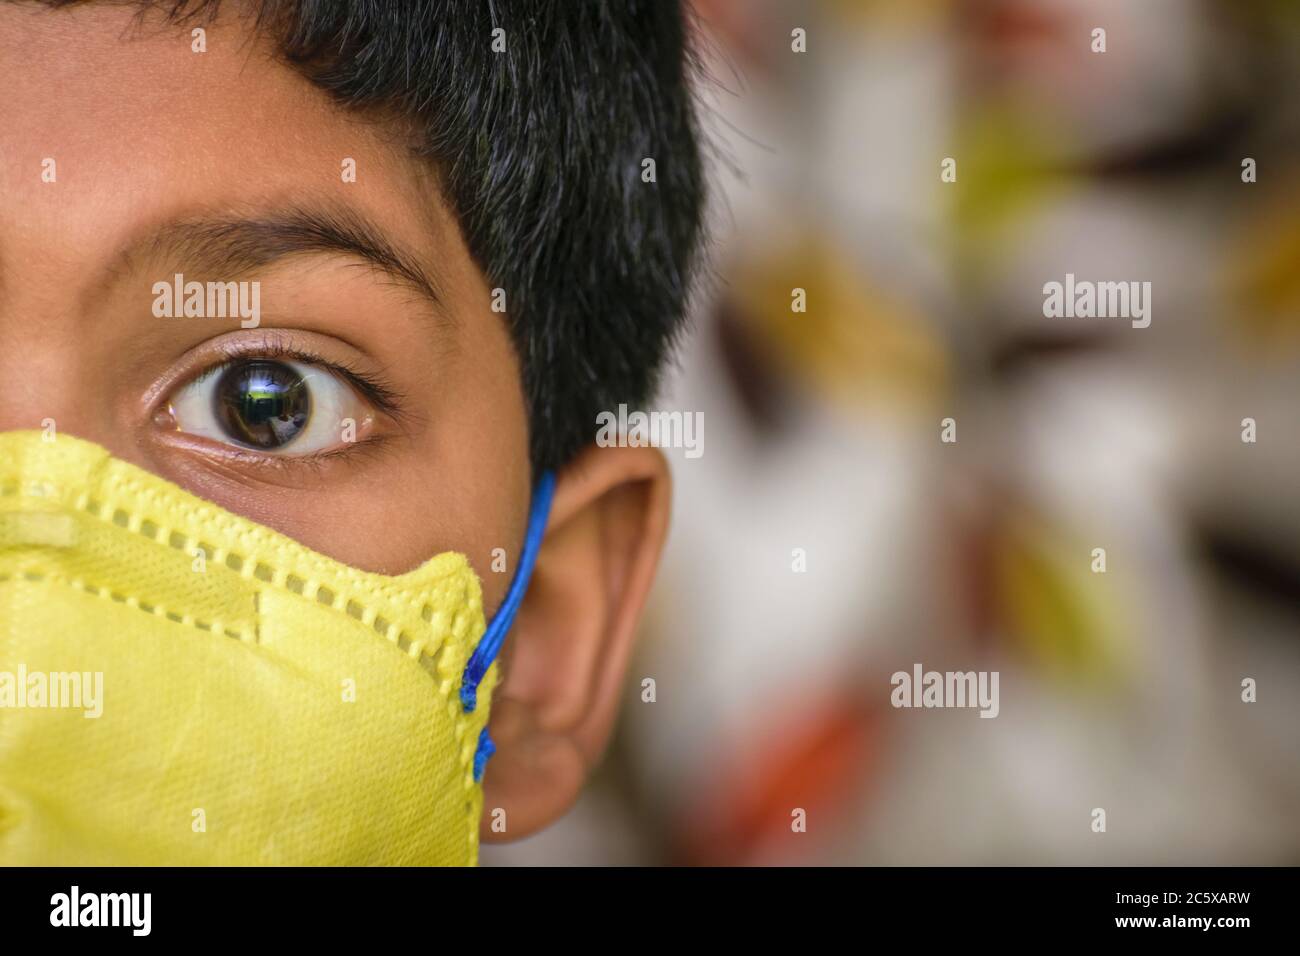 Isolierter junger indischer Junge mit prominenten Augen, die eine Gesichtsmaske N95 tragen, um gegen Covid 19 zu schützen. Platz für Text rechts Stockfoto